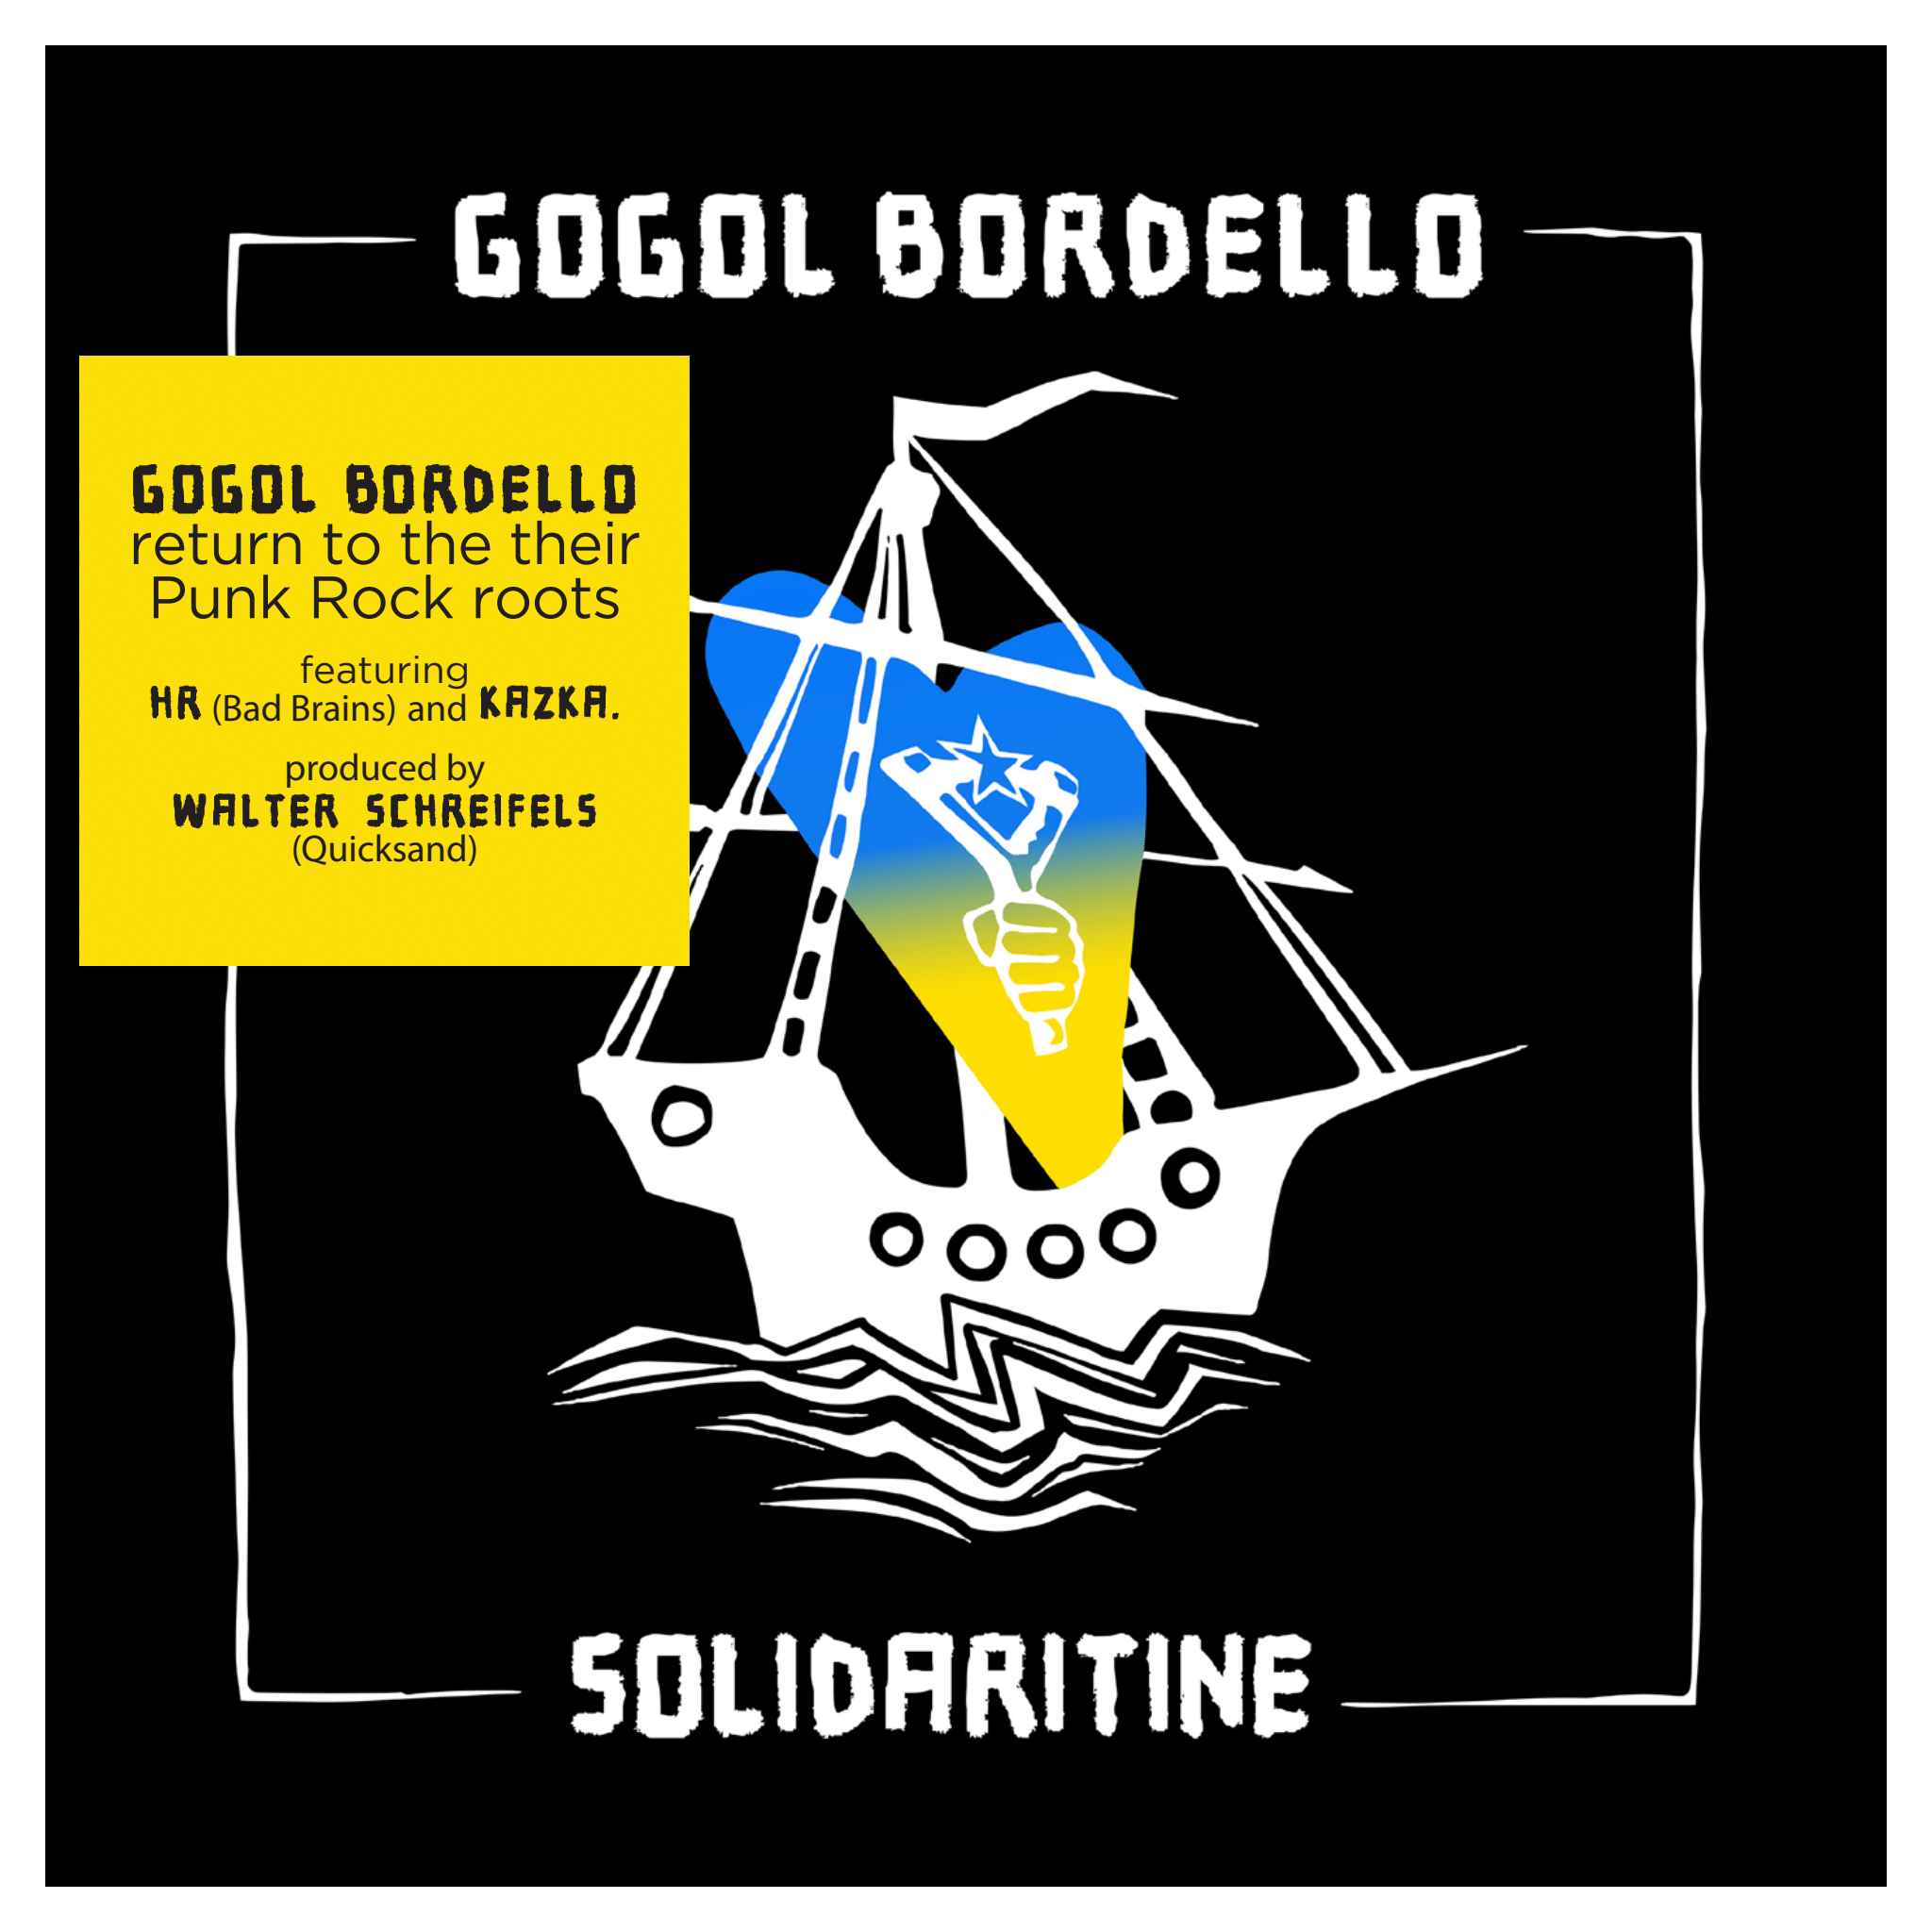 Gogol Bordello - Solidaritine - CD